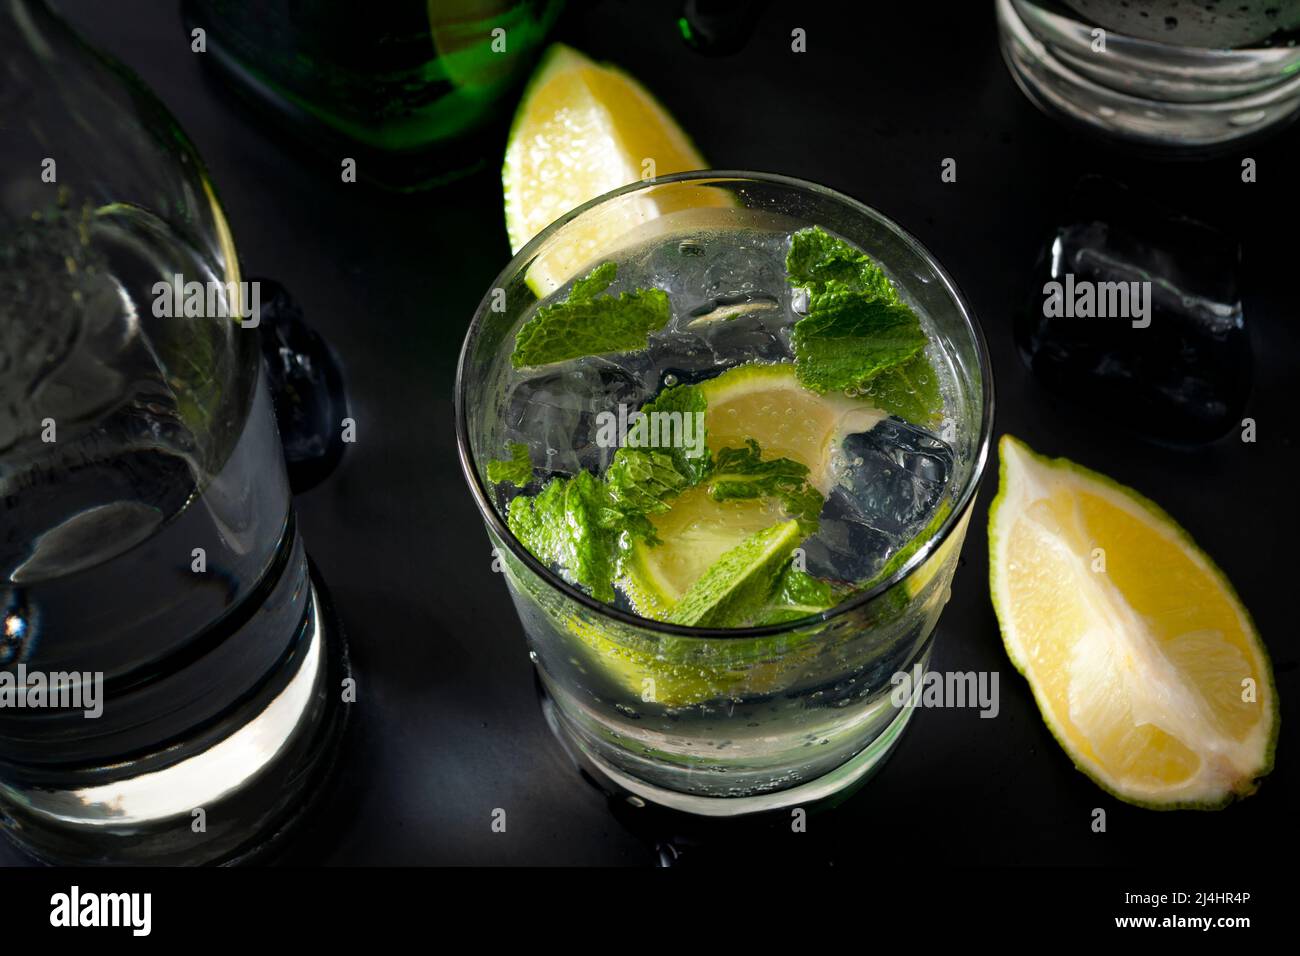 Concepto de cócteles refrescantes y bebidas alcohólicas mixtas con una copa de ginebra y tónica en una barra con una botella de ginebra y agua mineral Foto de stock